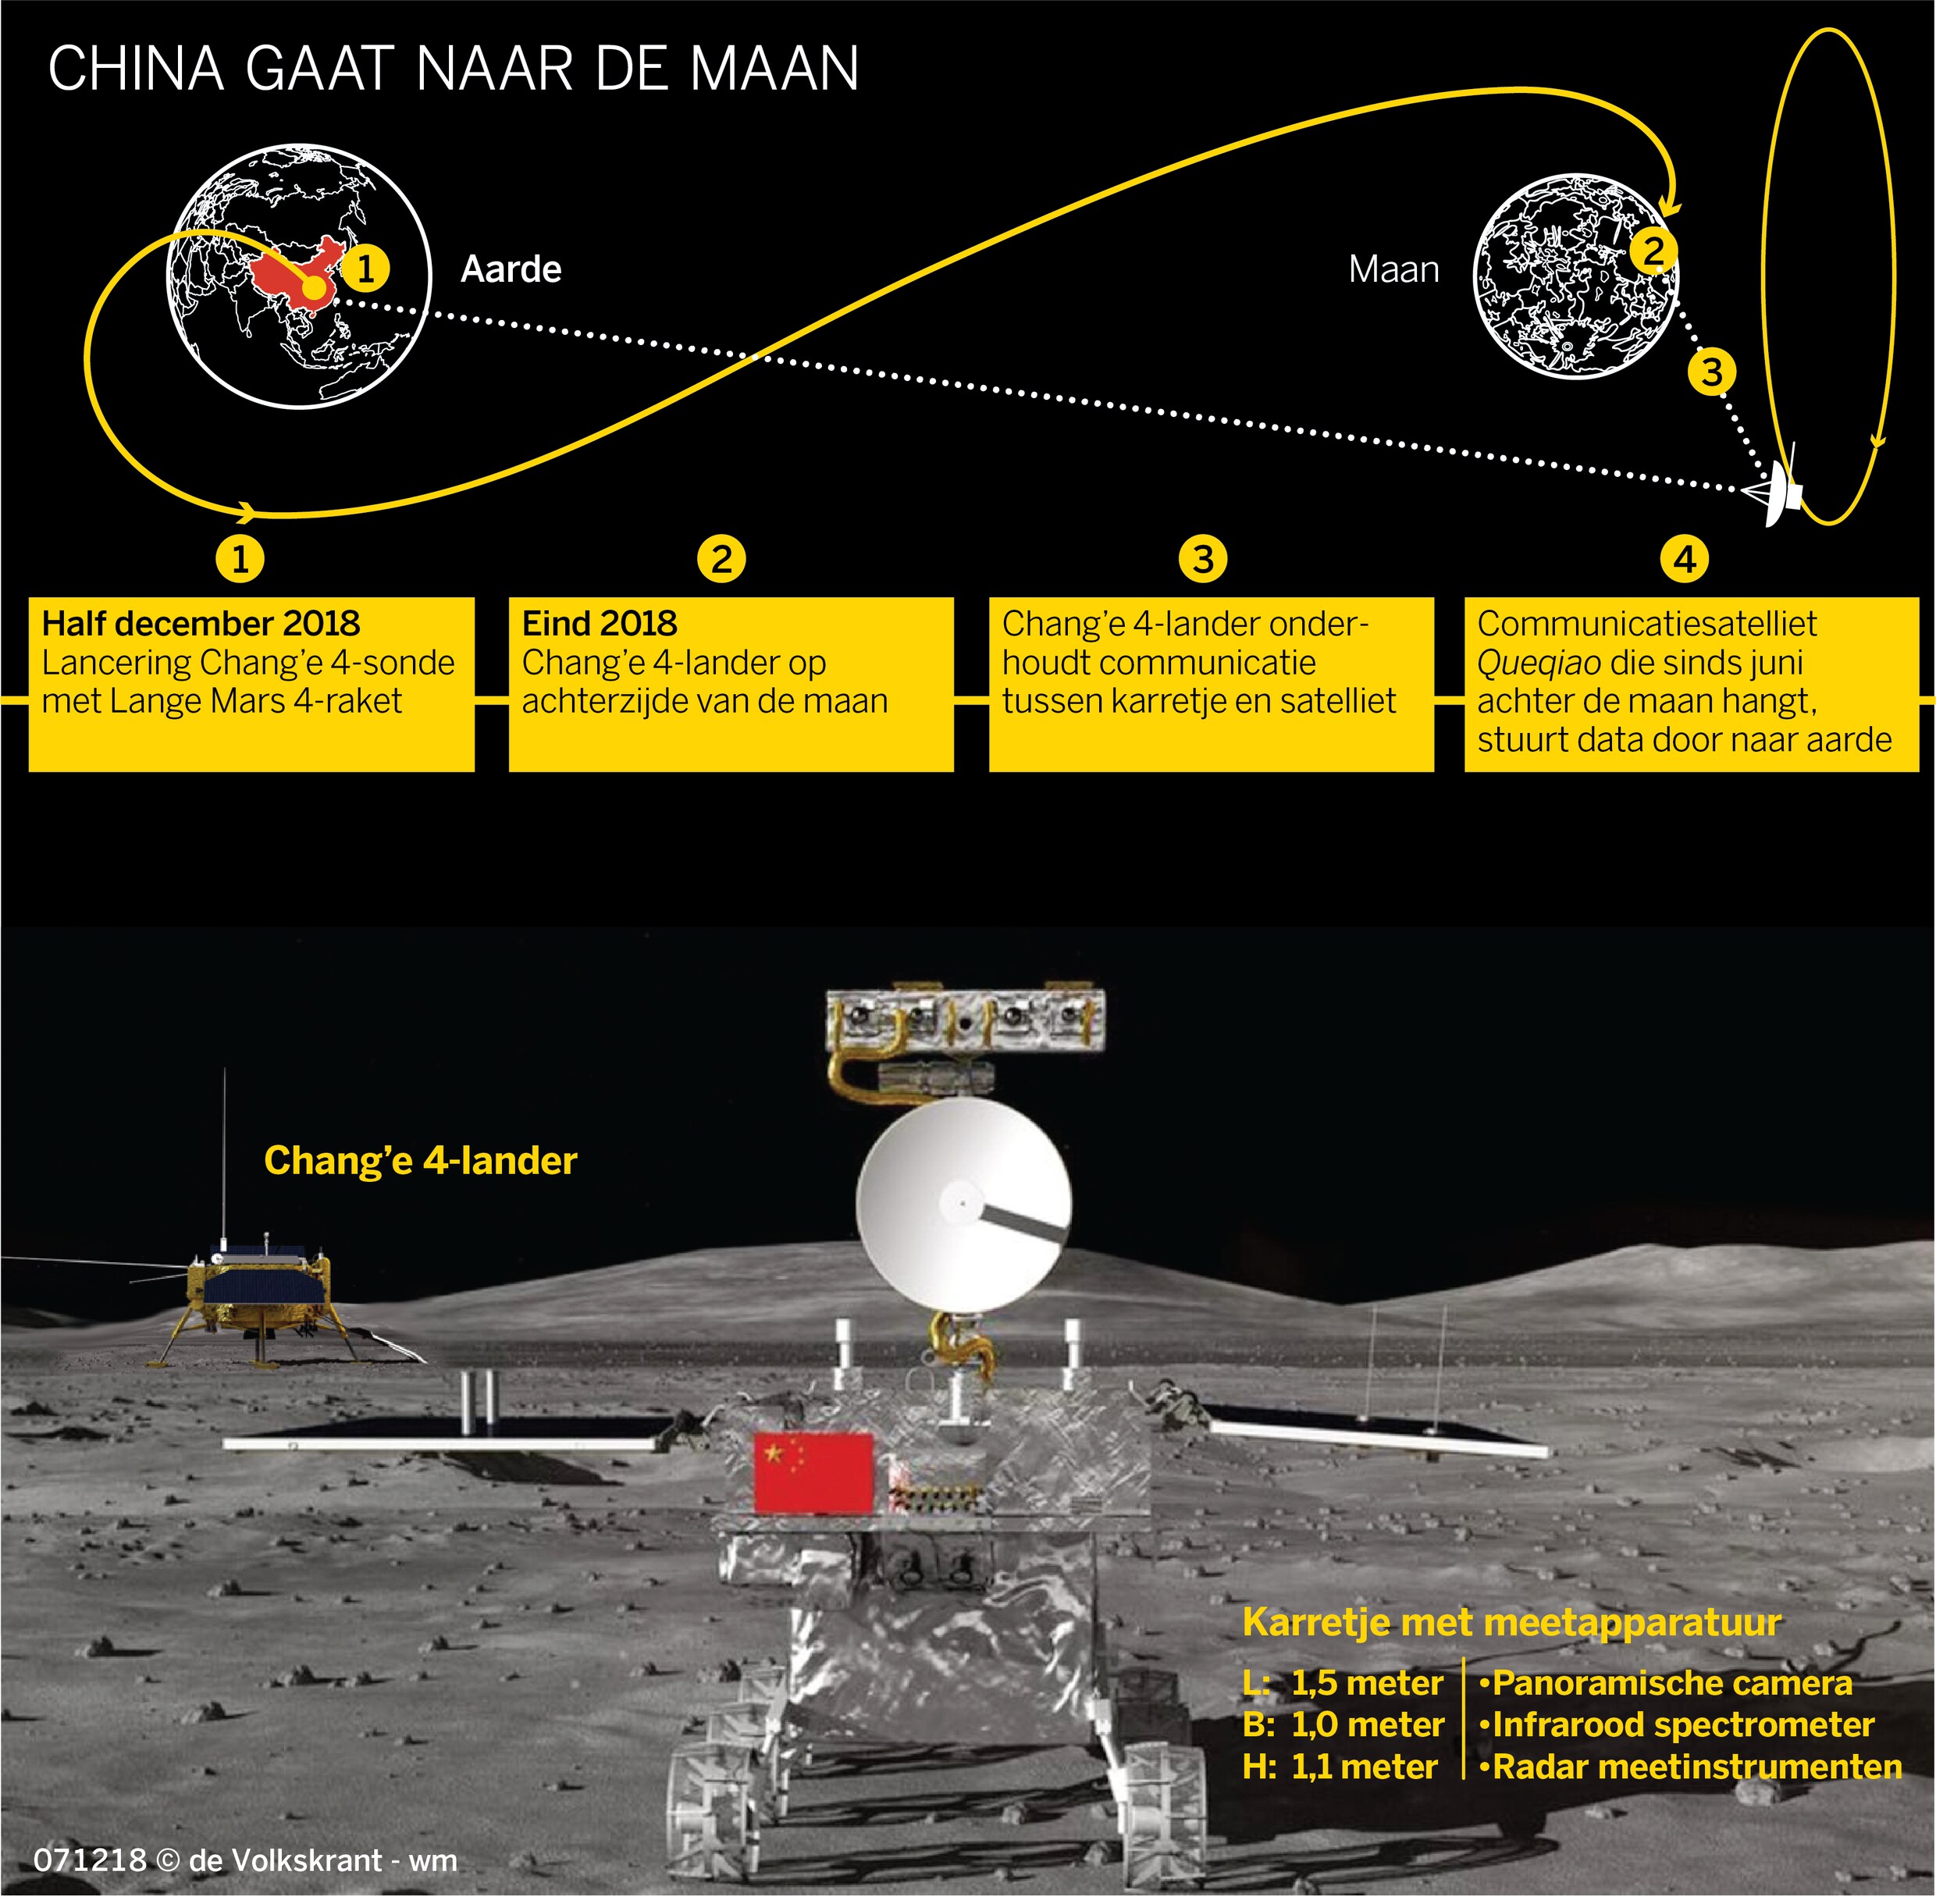 Chinese satelliet neemt aardappelen en bloemen mee naar ‘donkere kant’ van de maan